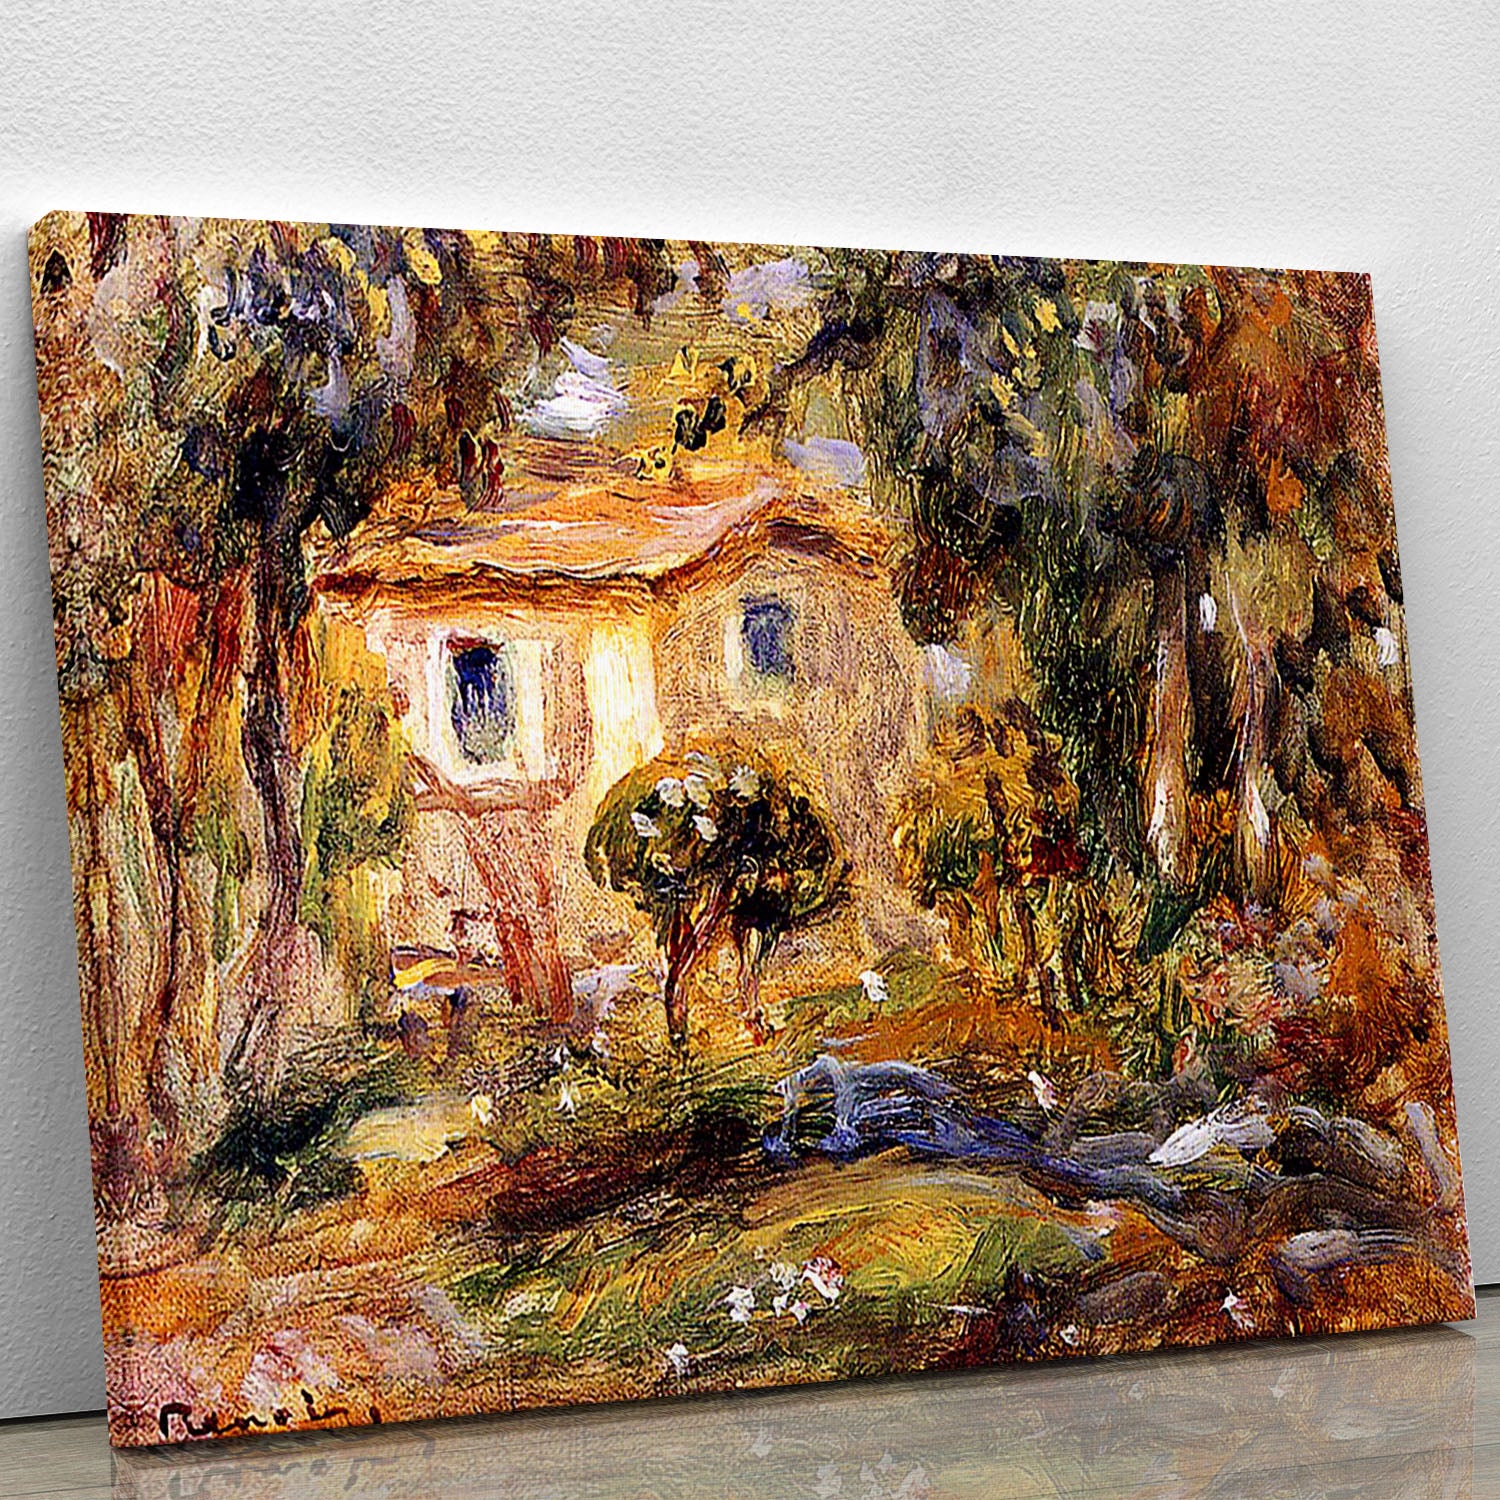 Landscape1 by Renoir Canvas Print or Poster - Canvas Art Rocks - 1